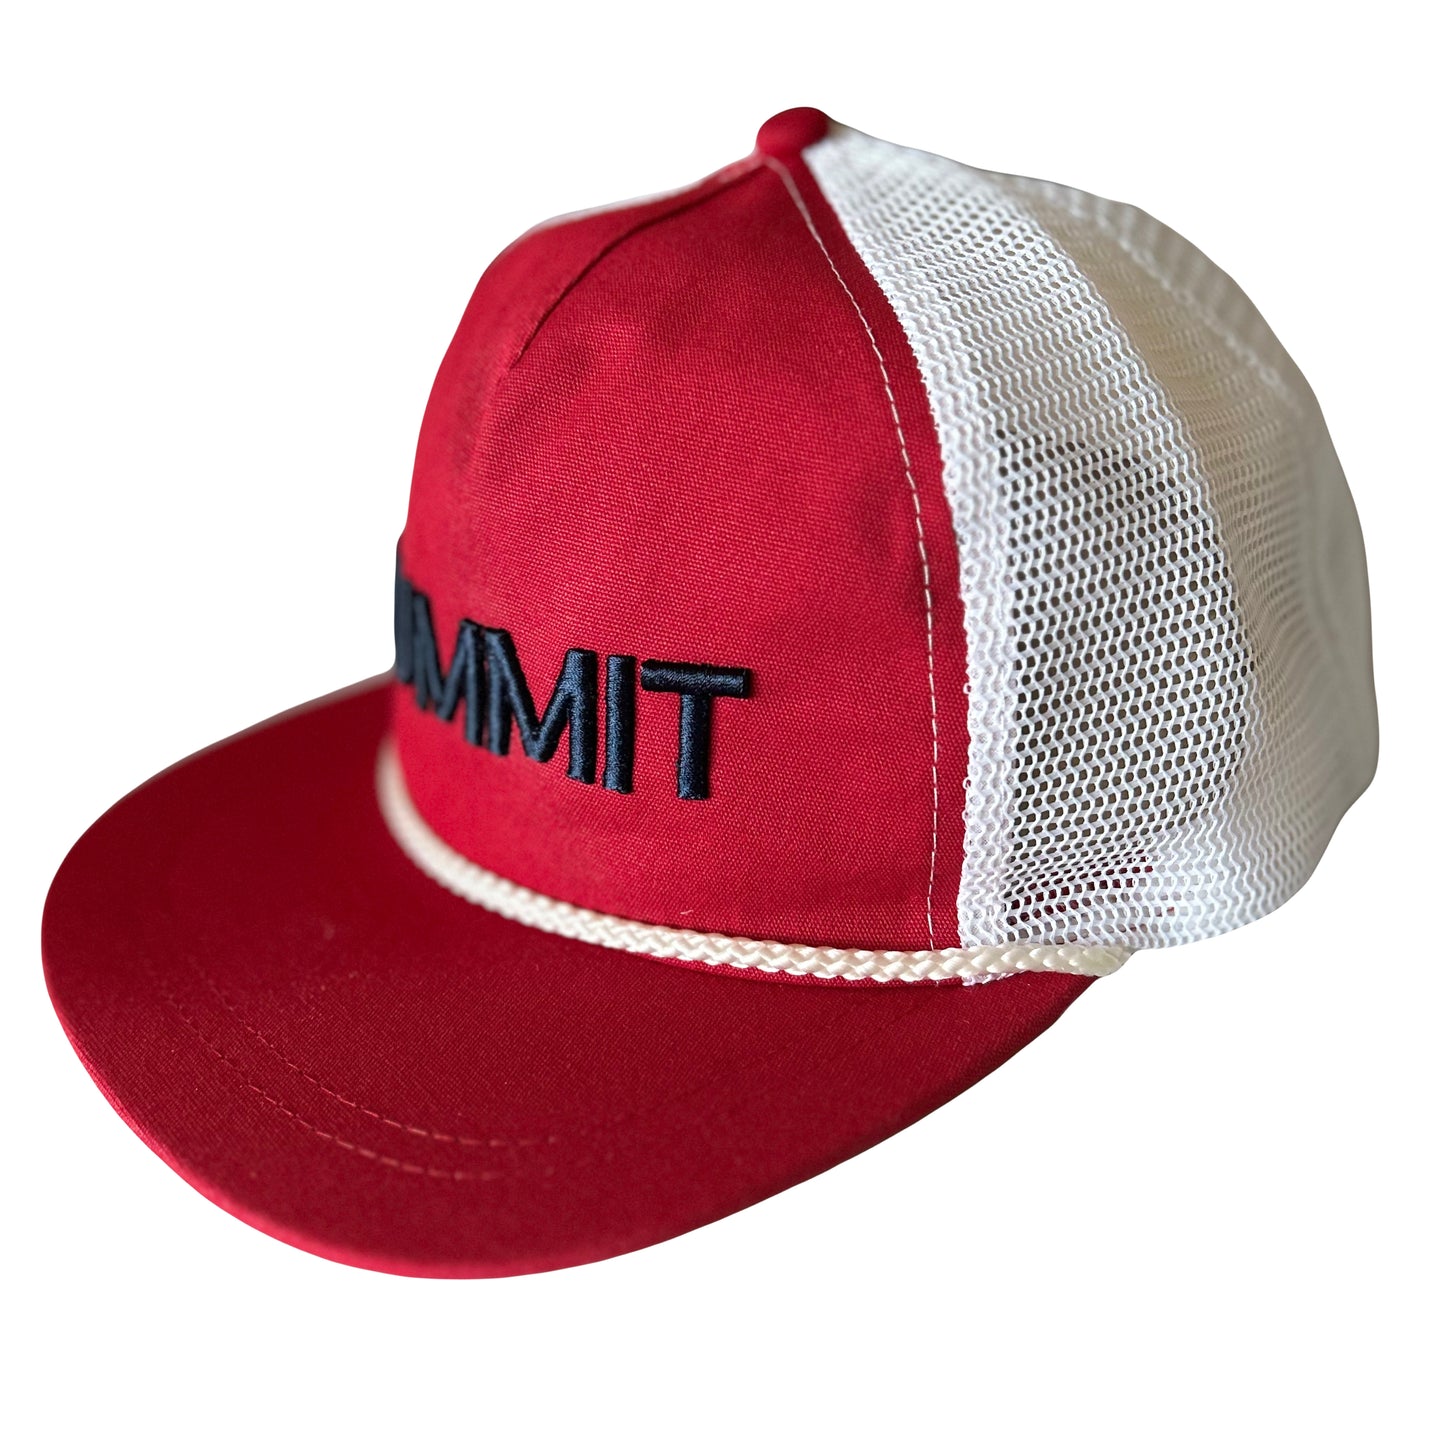 Summit Junior Tour Masters Hat